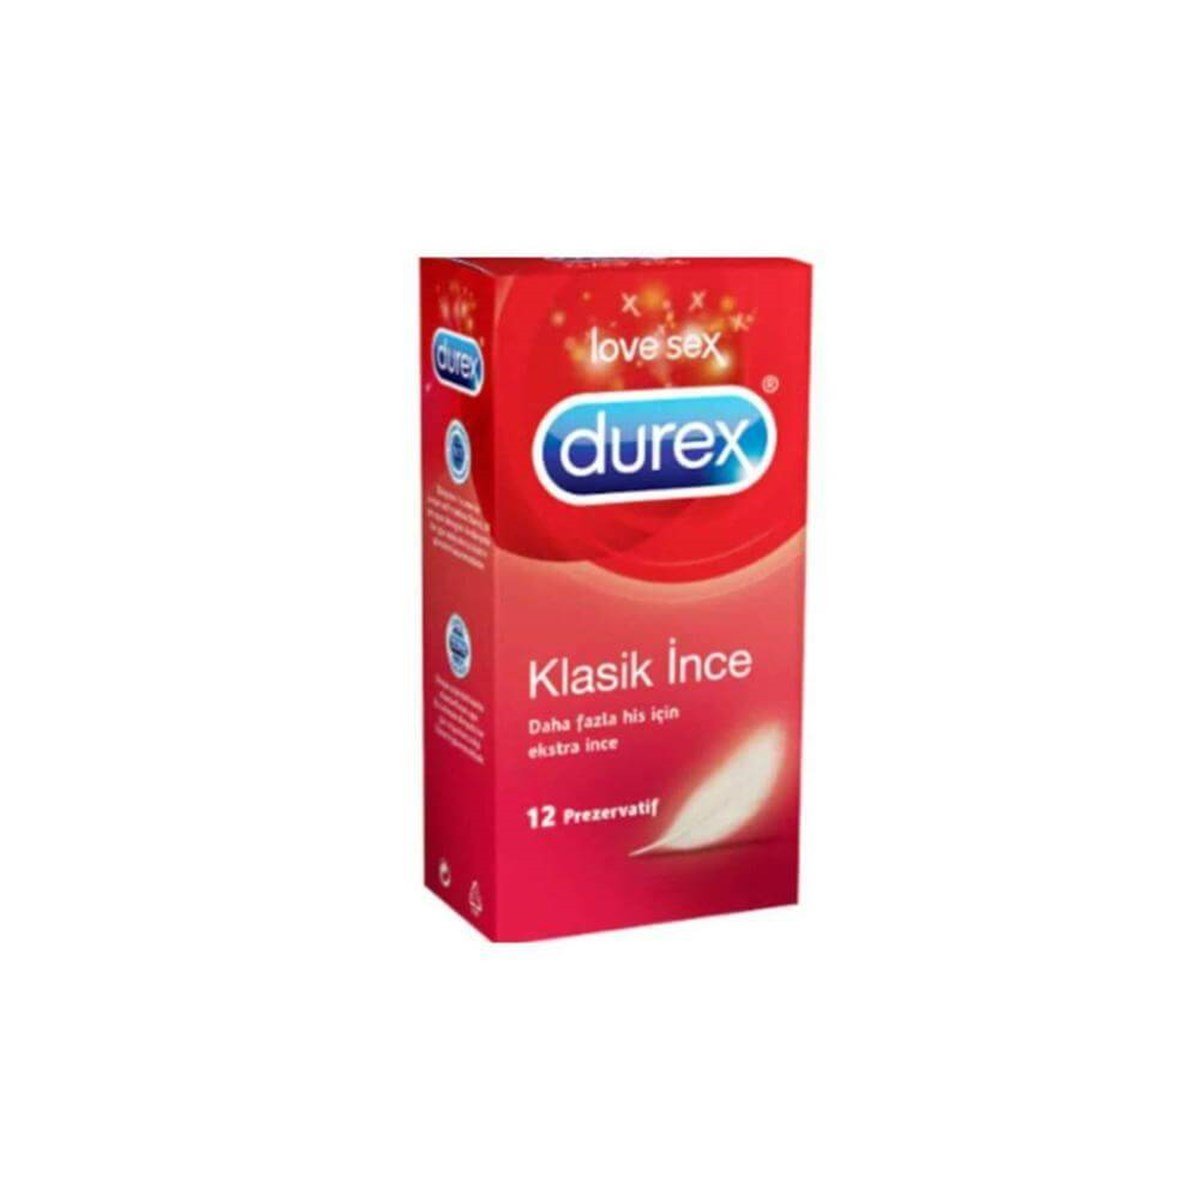 Durex Klasik İnce Prezervatif 12'li DepoEczanem.com | Dermokozmetik Cilt &  Vücut Bakımı, Vitamin & Mineral – Takviye Edici Gıda ve Reçetesiz Sağlık  Ürünleri